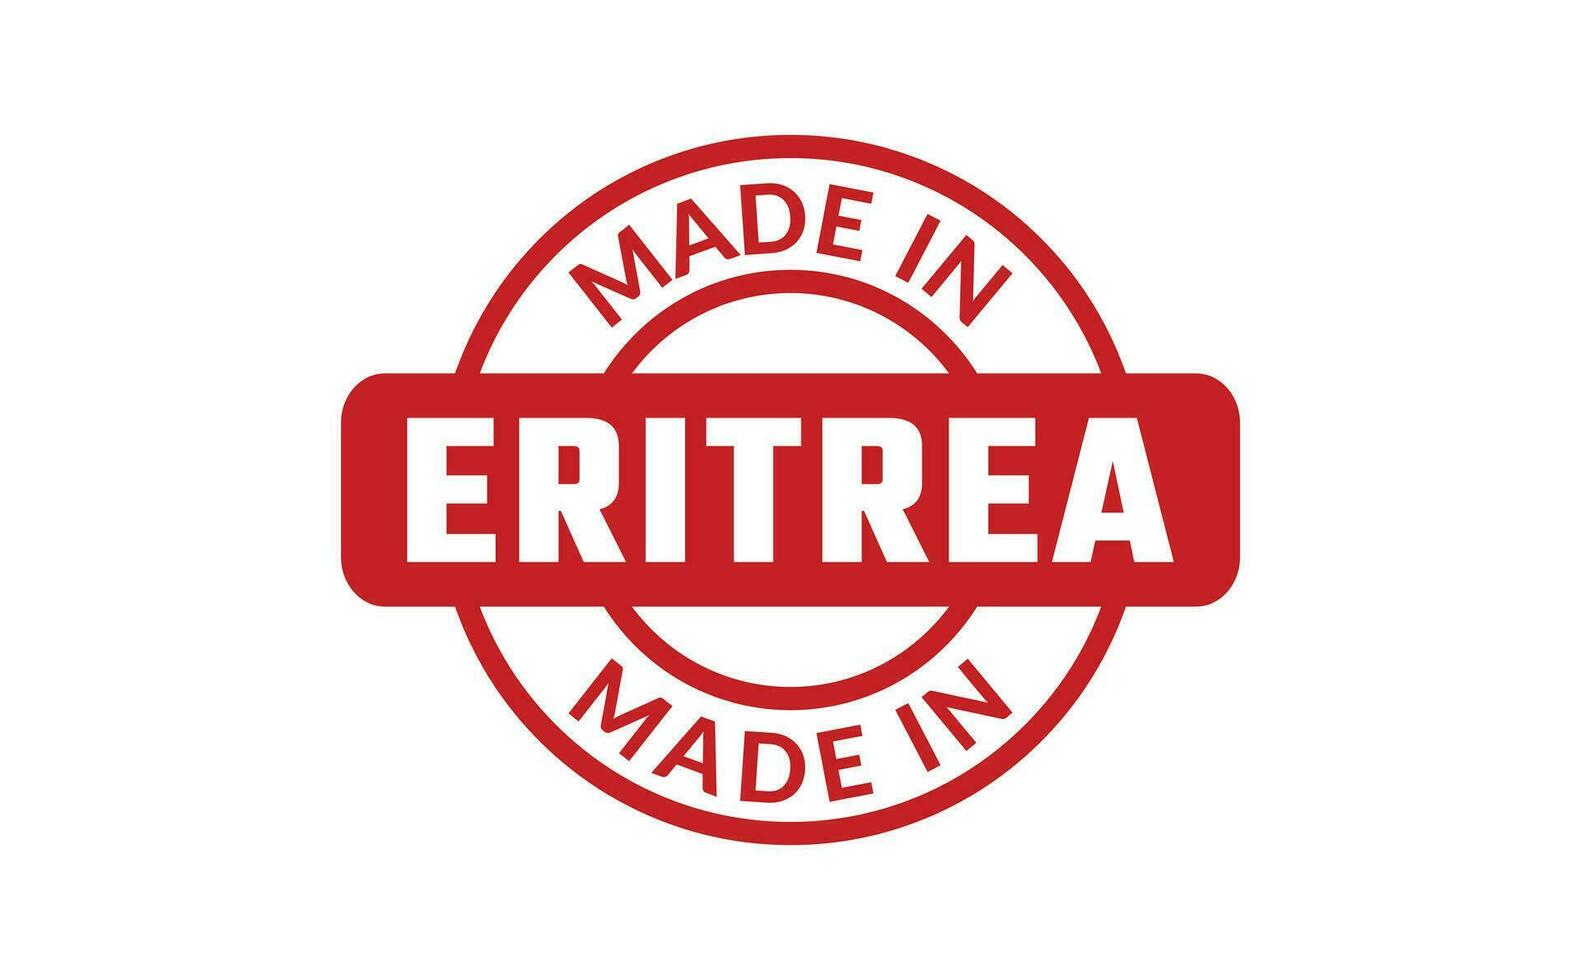 tillverkad i eritrea sudd stämpel vektor